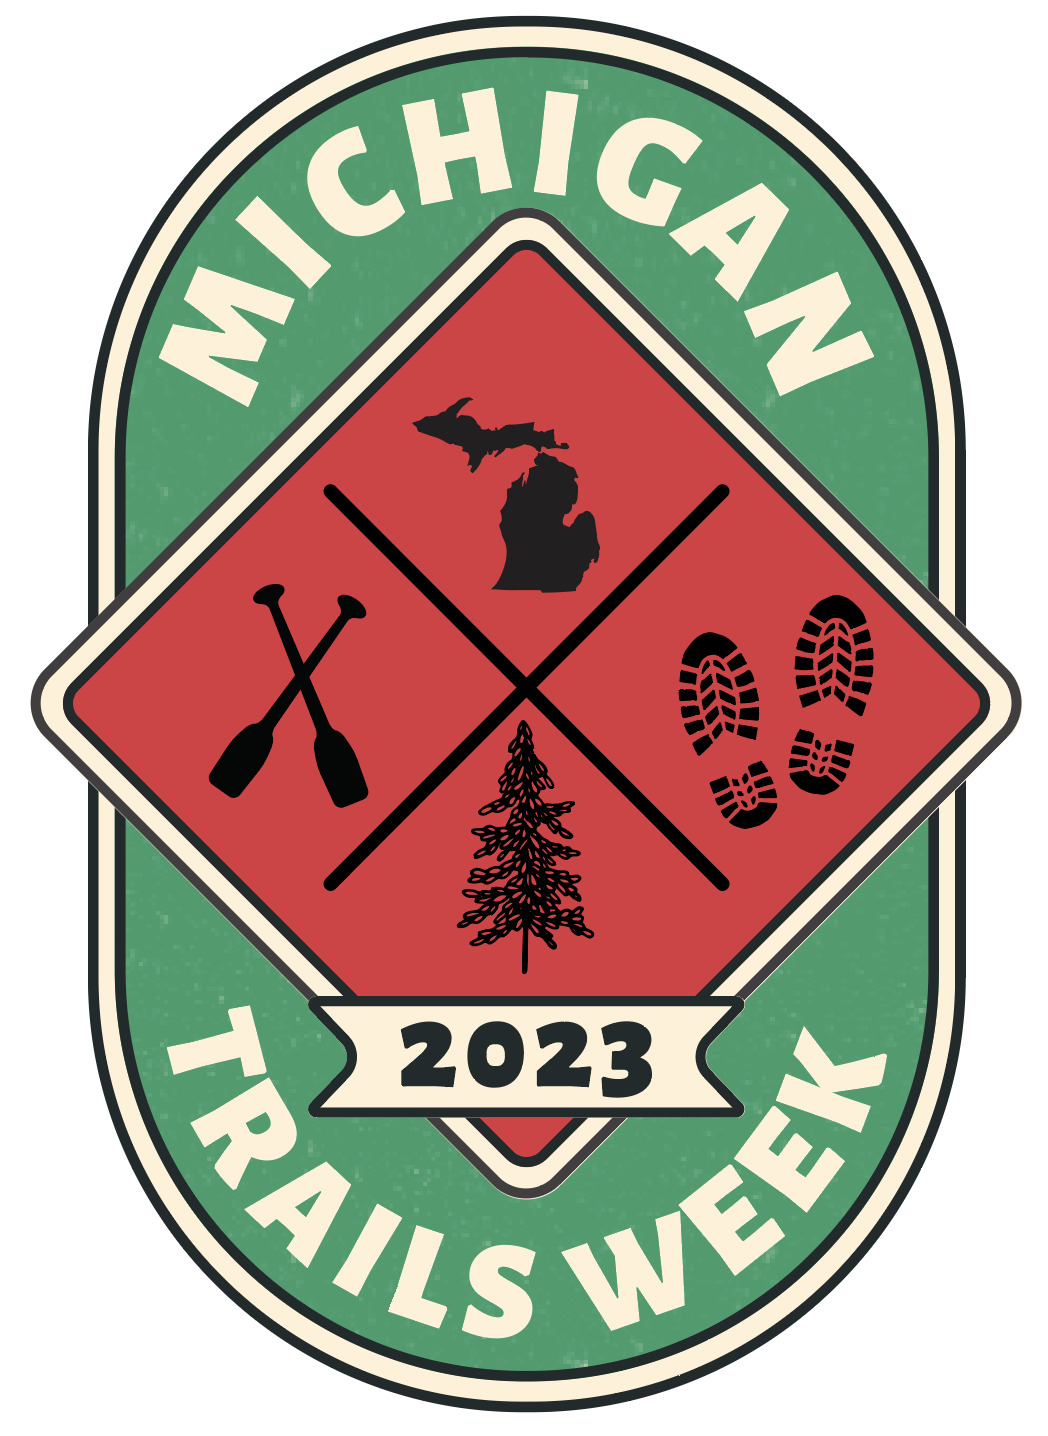 2023 Michigan Trails Week Sticker